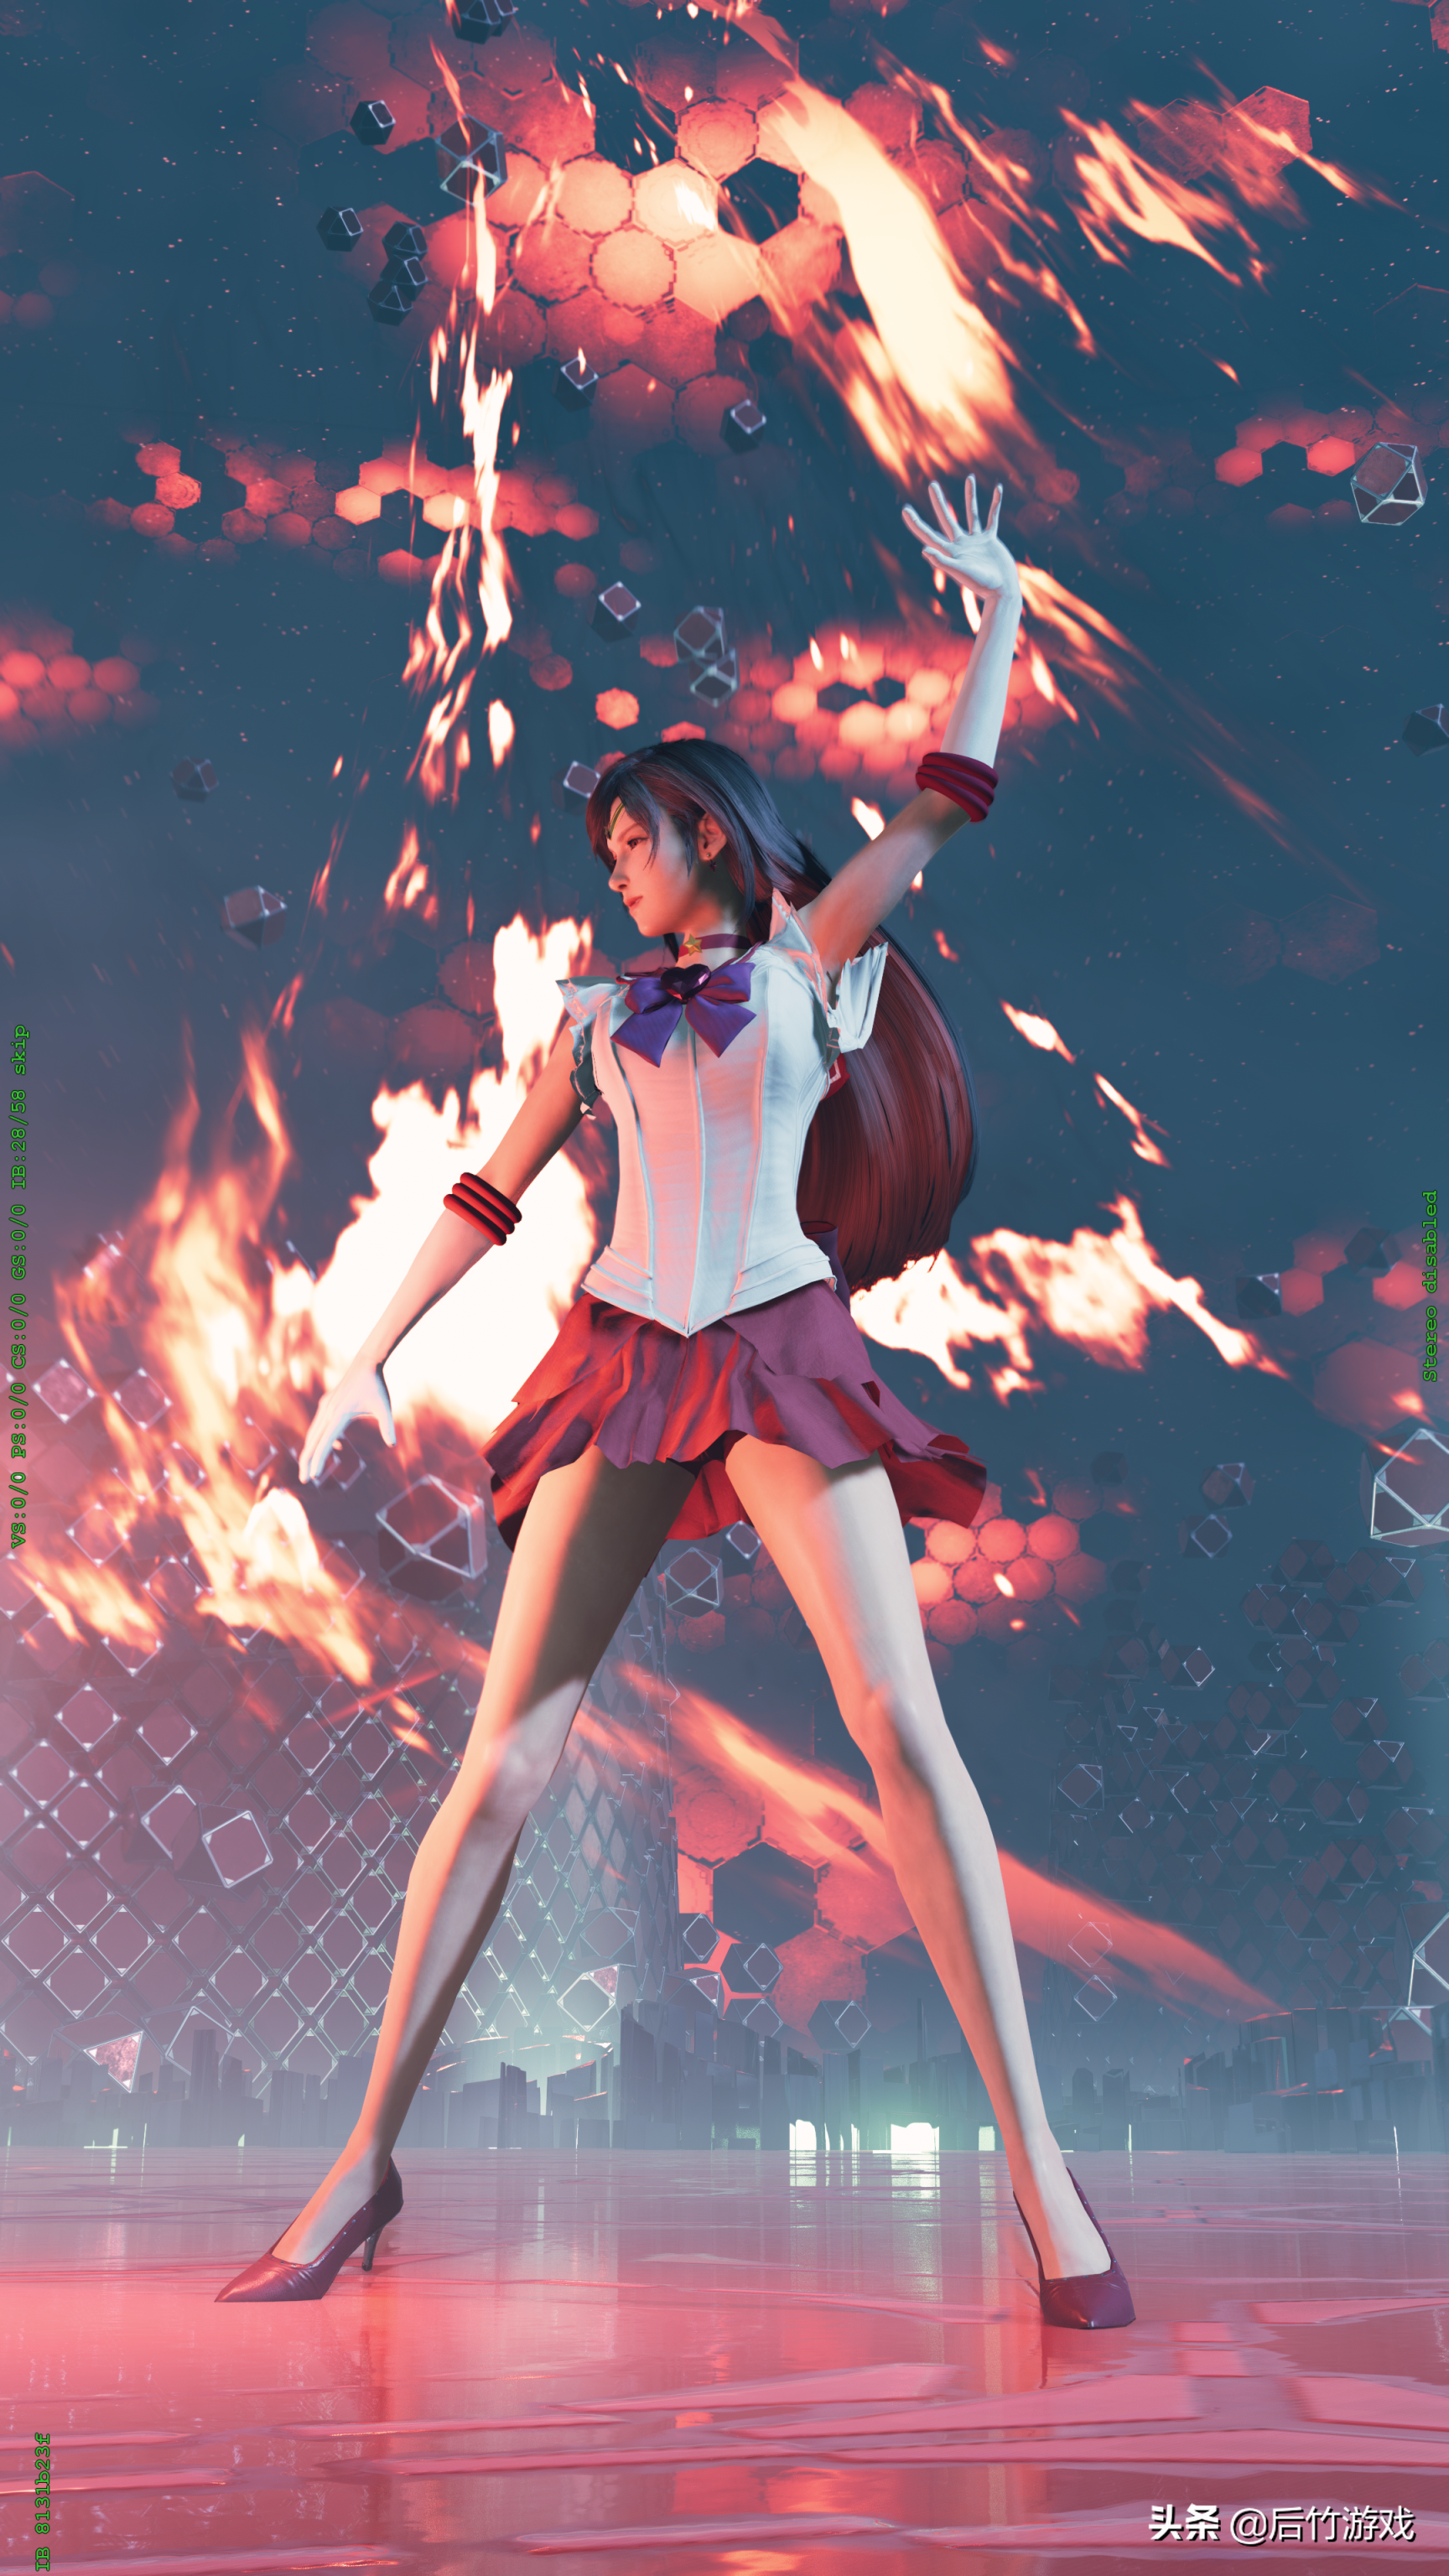 《最终幻想7重制版》美少女战士mod赏析:穿水手服的蒂法